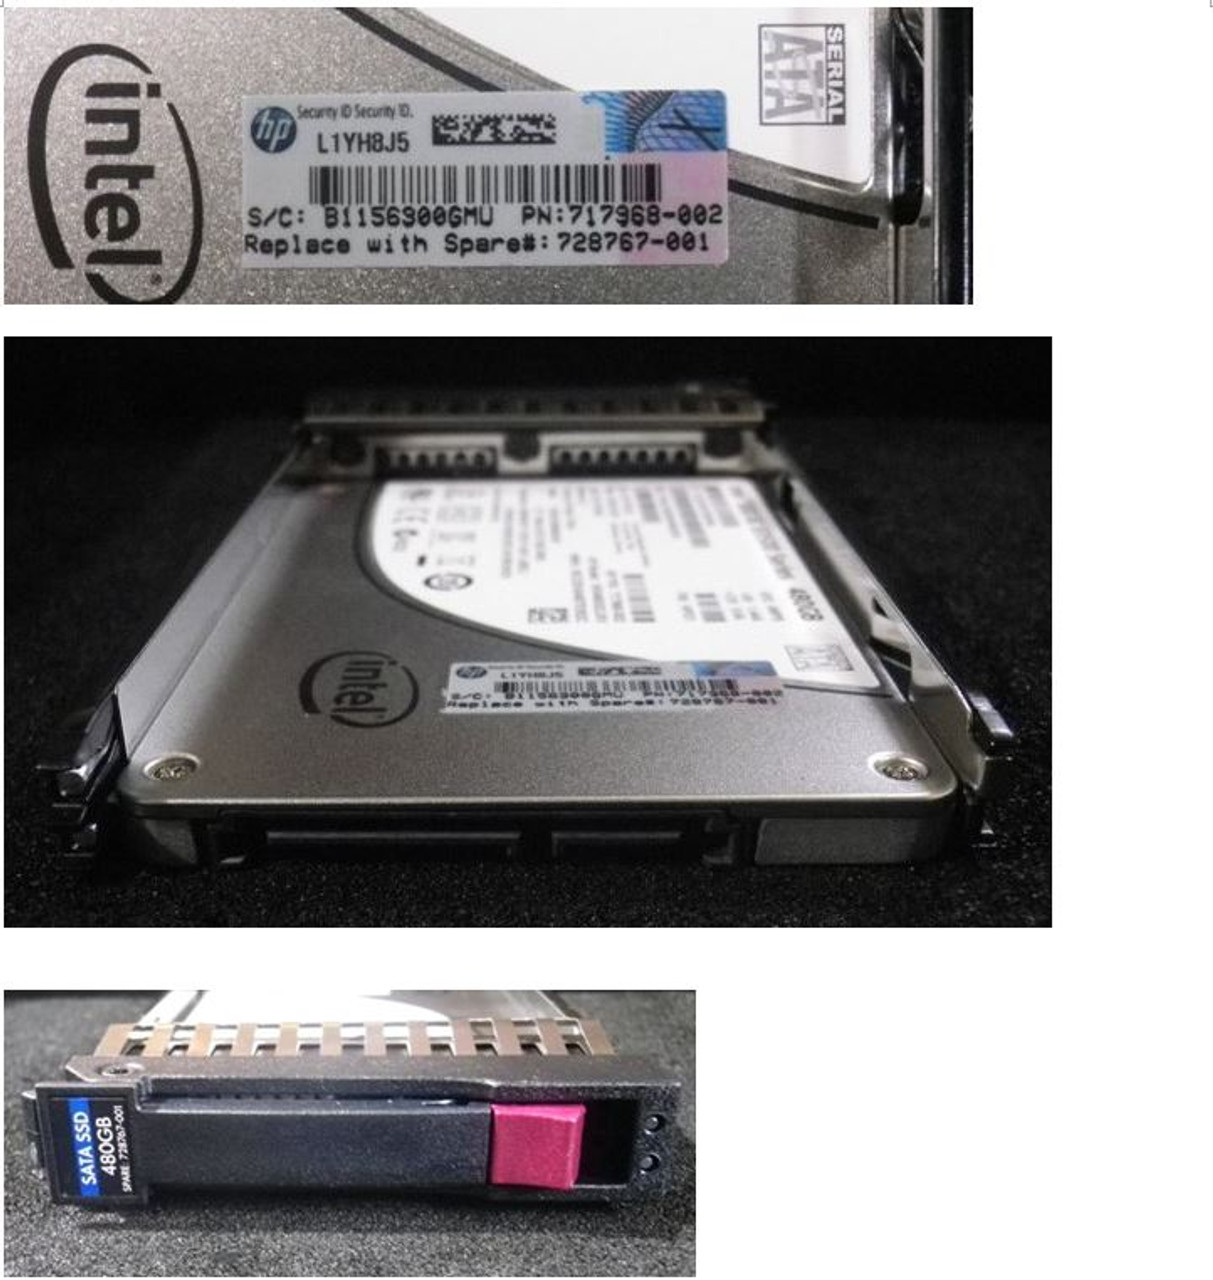 SPS-DRV SSD 480GB 6G SATA 2.5 VE - 728767-001